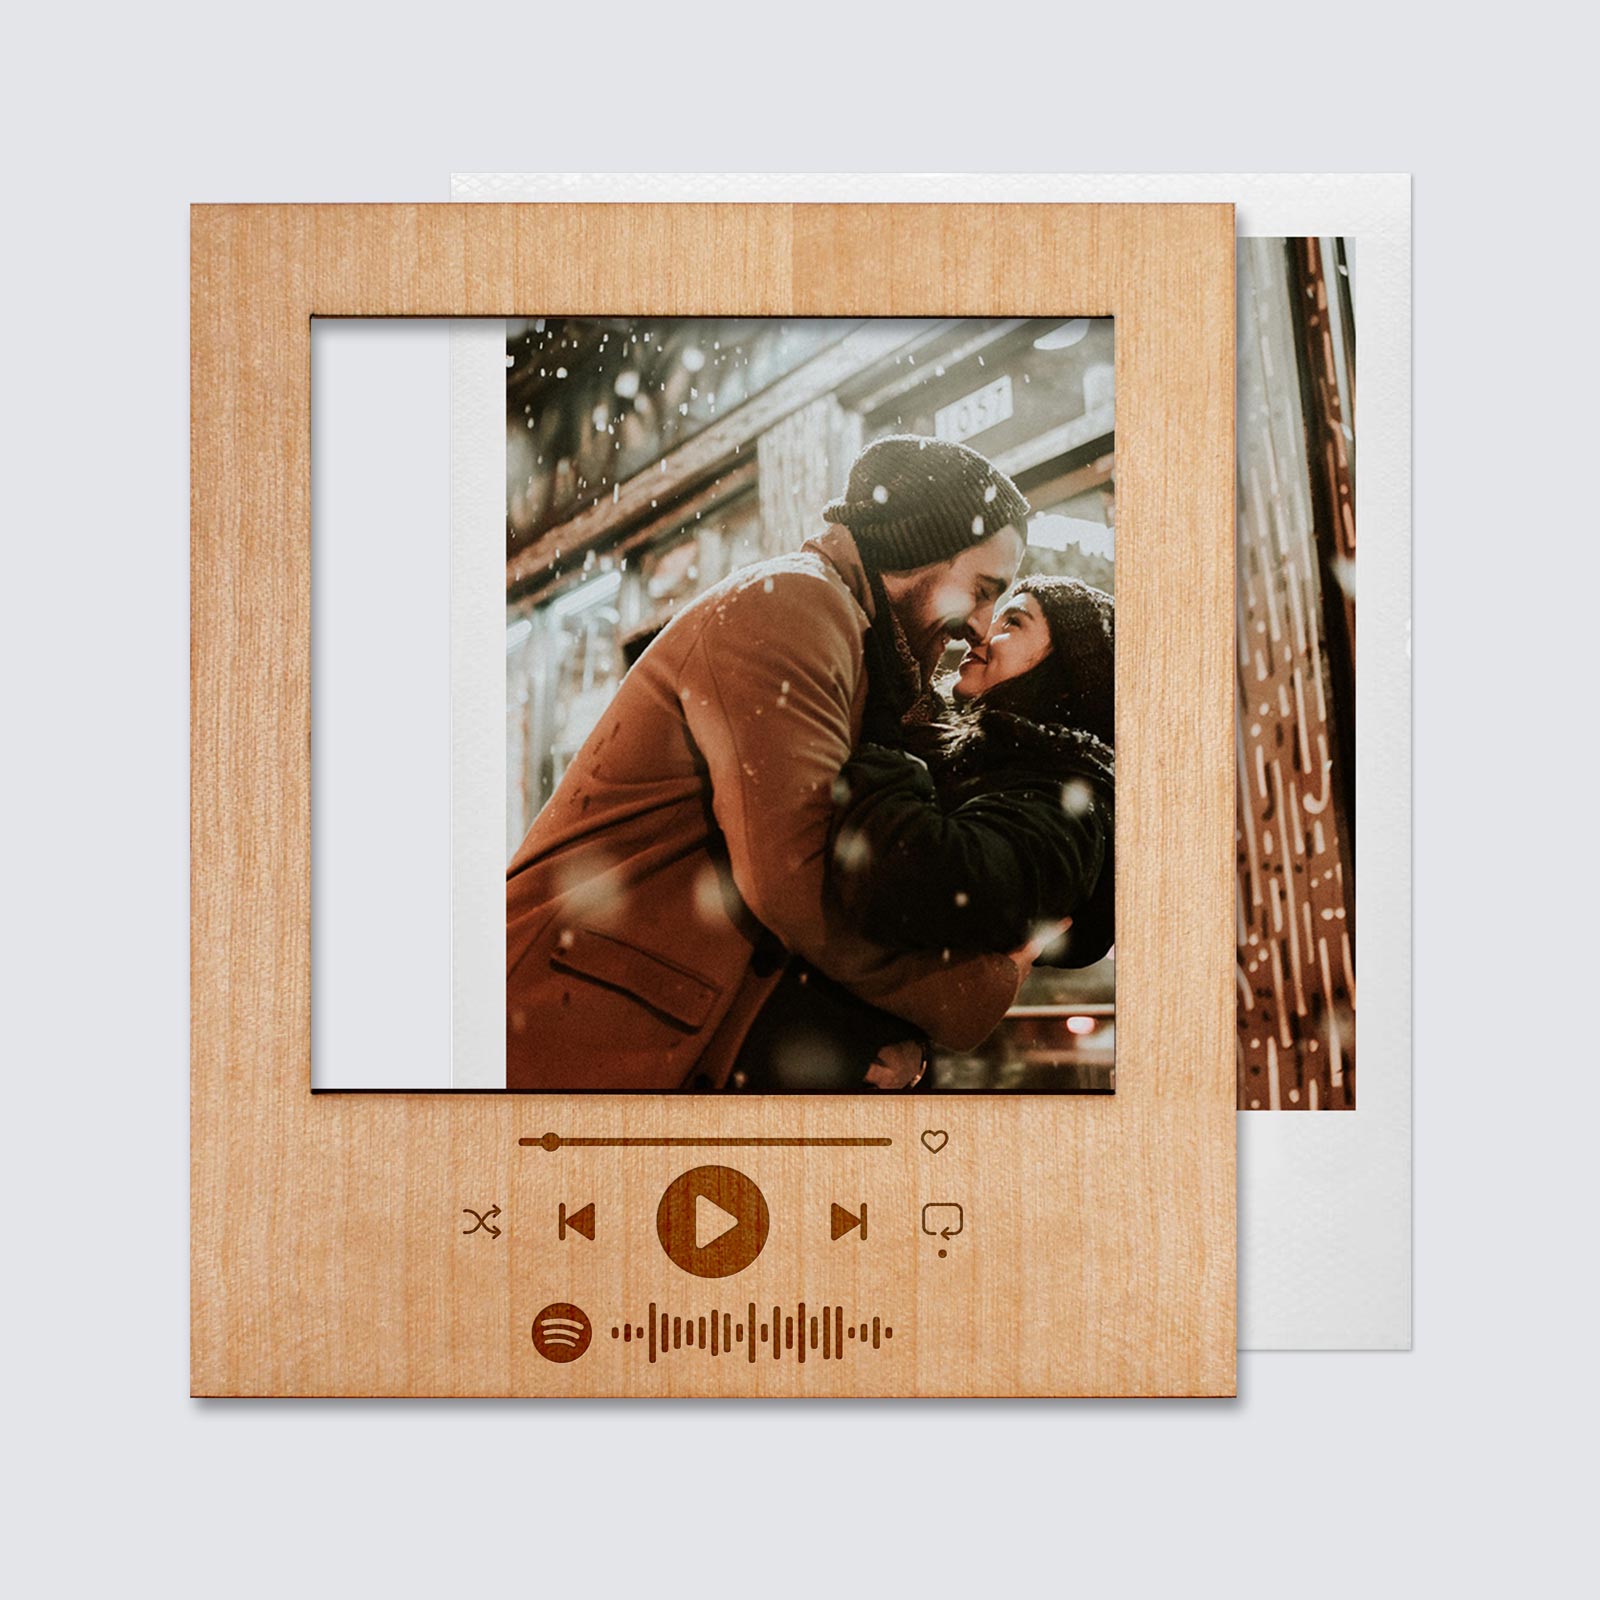 Marco Spotify polaroid magnético personalizado madera formato grande 92x108  mm grabado